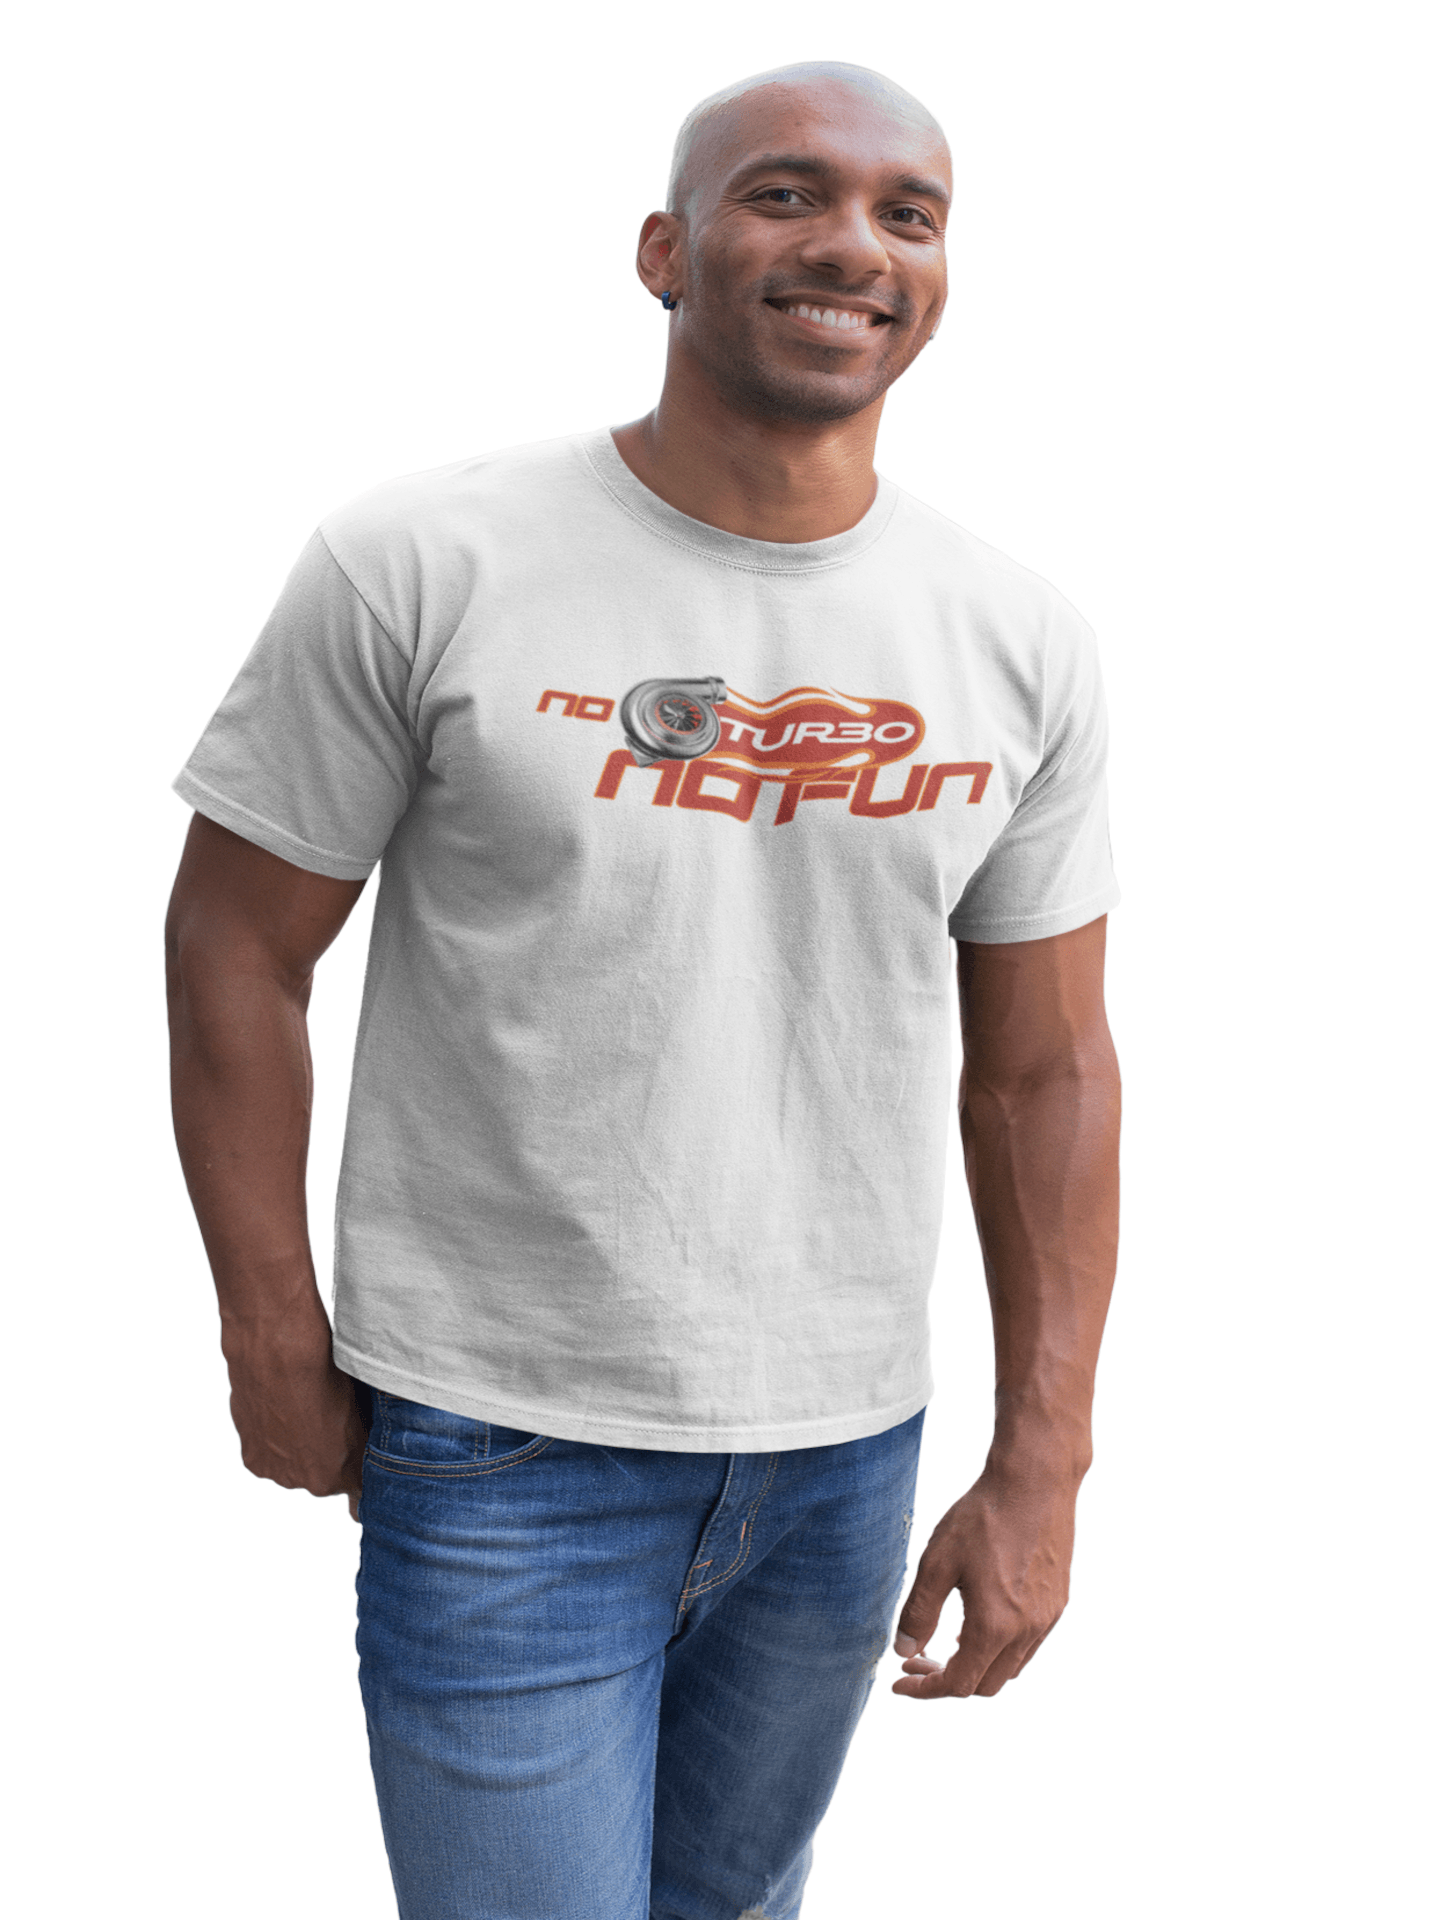 No Turbo No Fun - Herren T-Shirt von TurboArts